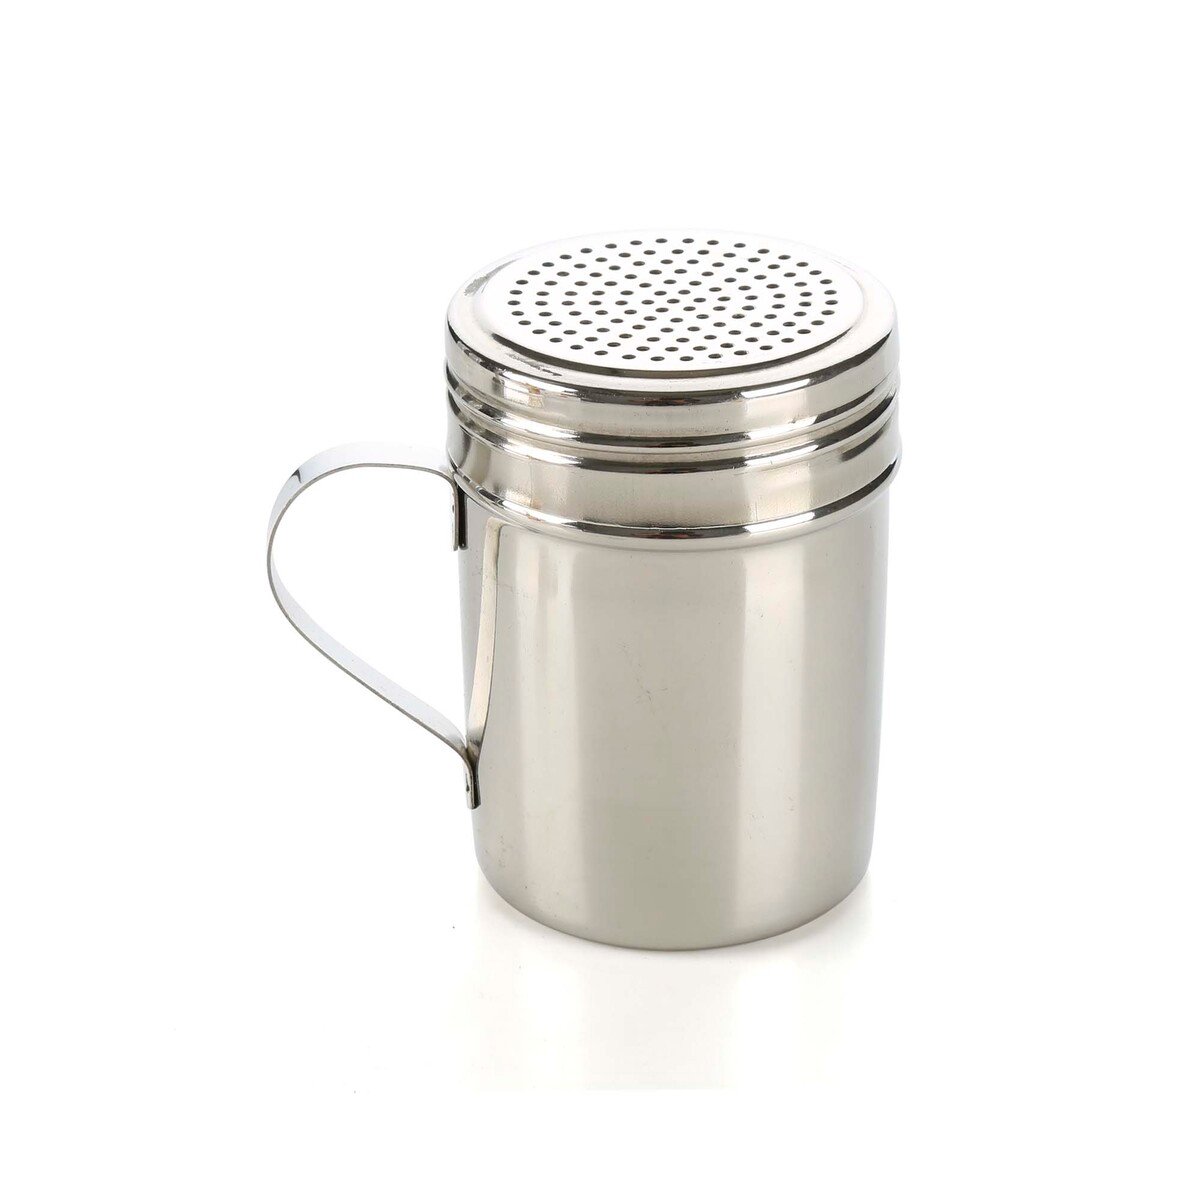 Chefline Salt and Pepper Shaker